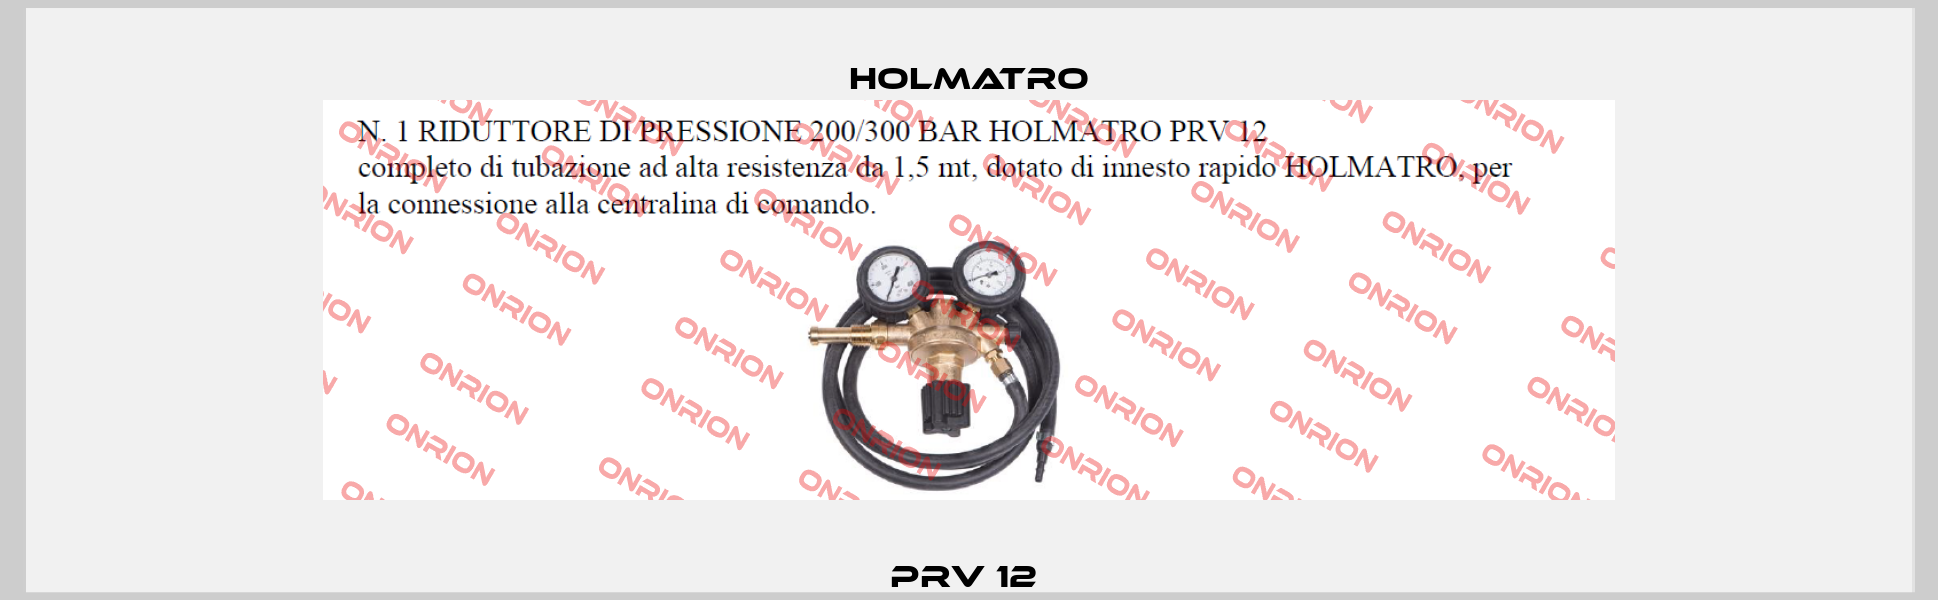 PRV 12  Holmatro